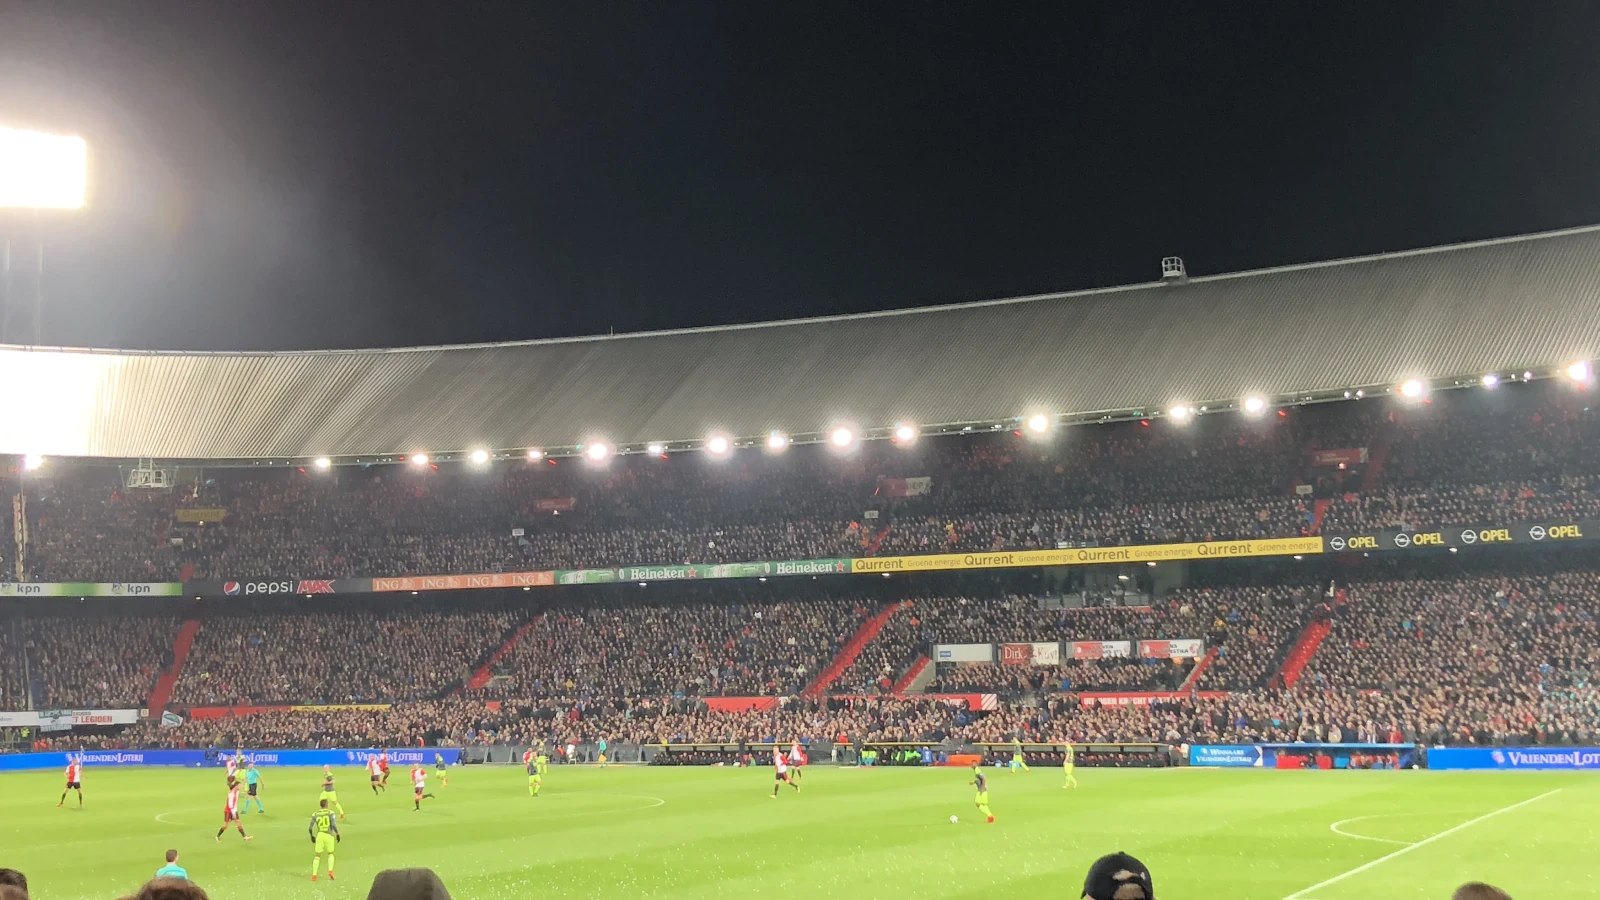 LIVE | Feyenoord - Fortuna Sittard (5-0) | De wedstrijd is afgelopen